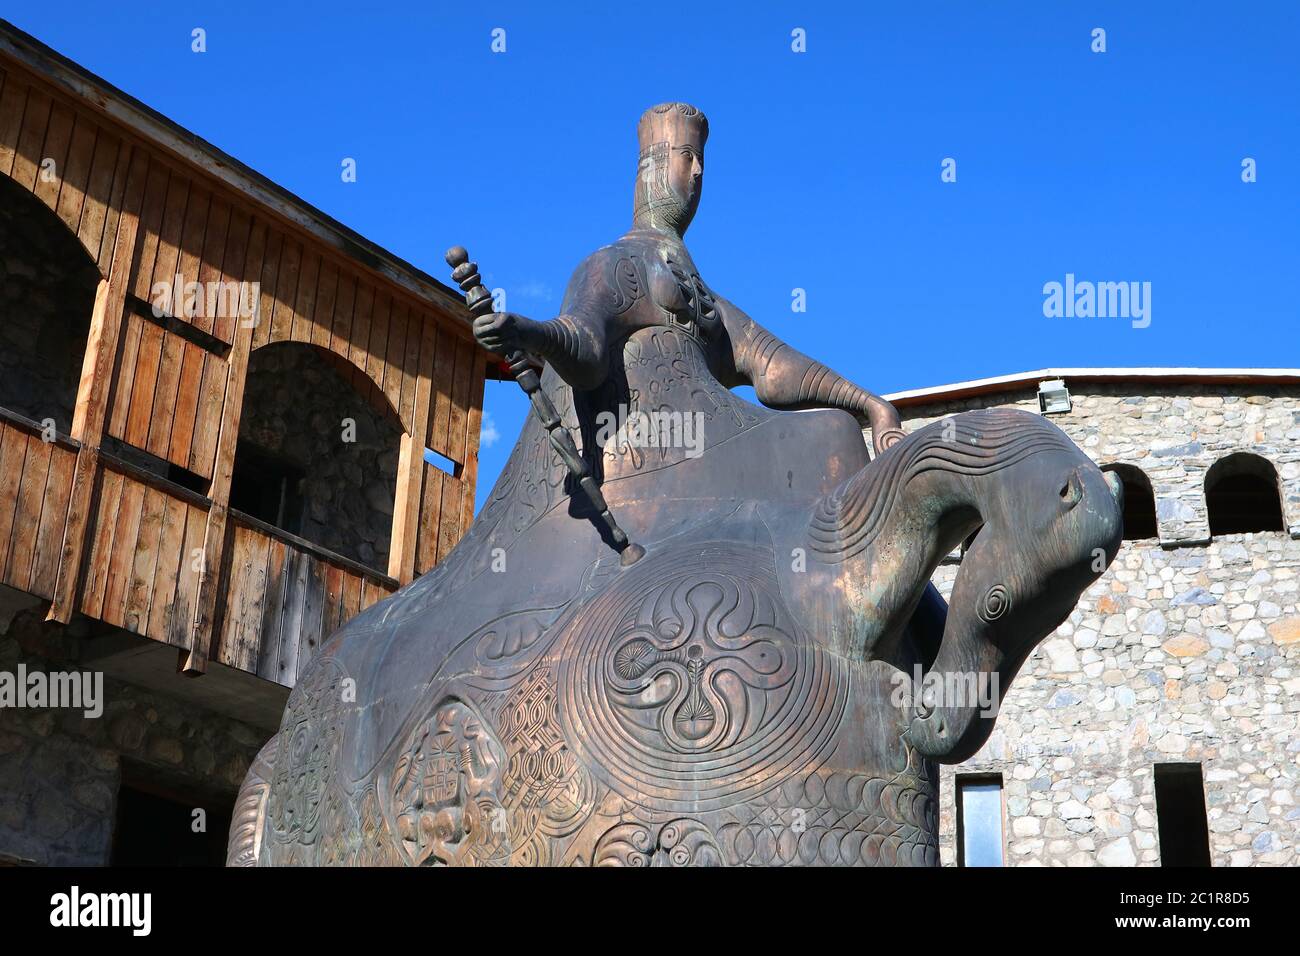 Monument en bronze de Tamar le Grand, le célèbre Roi féminin de Géorgie sur la place de la ville de Mestia, Haut-Svaneti, Géorgie Banque D'Images